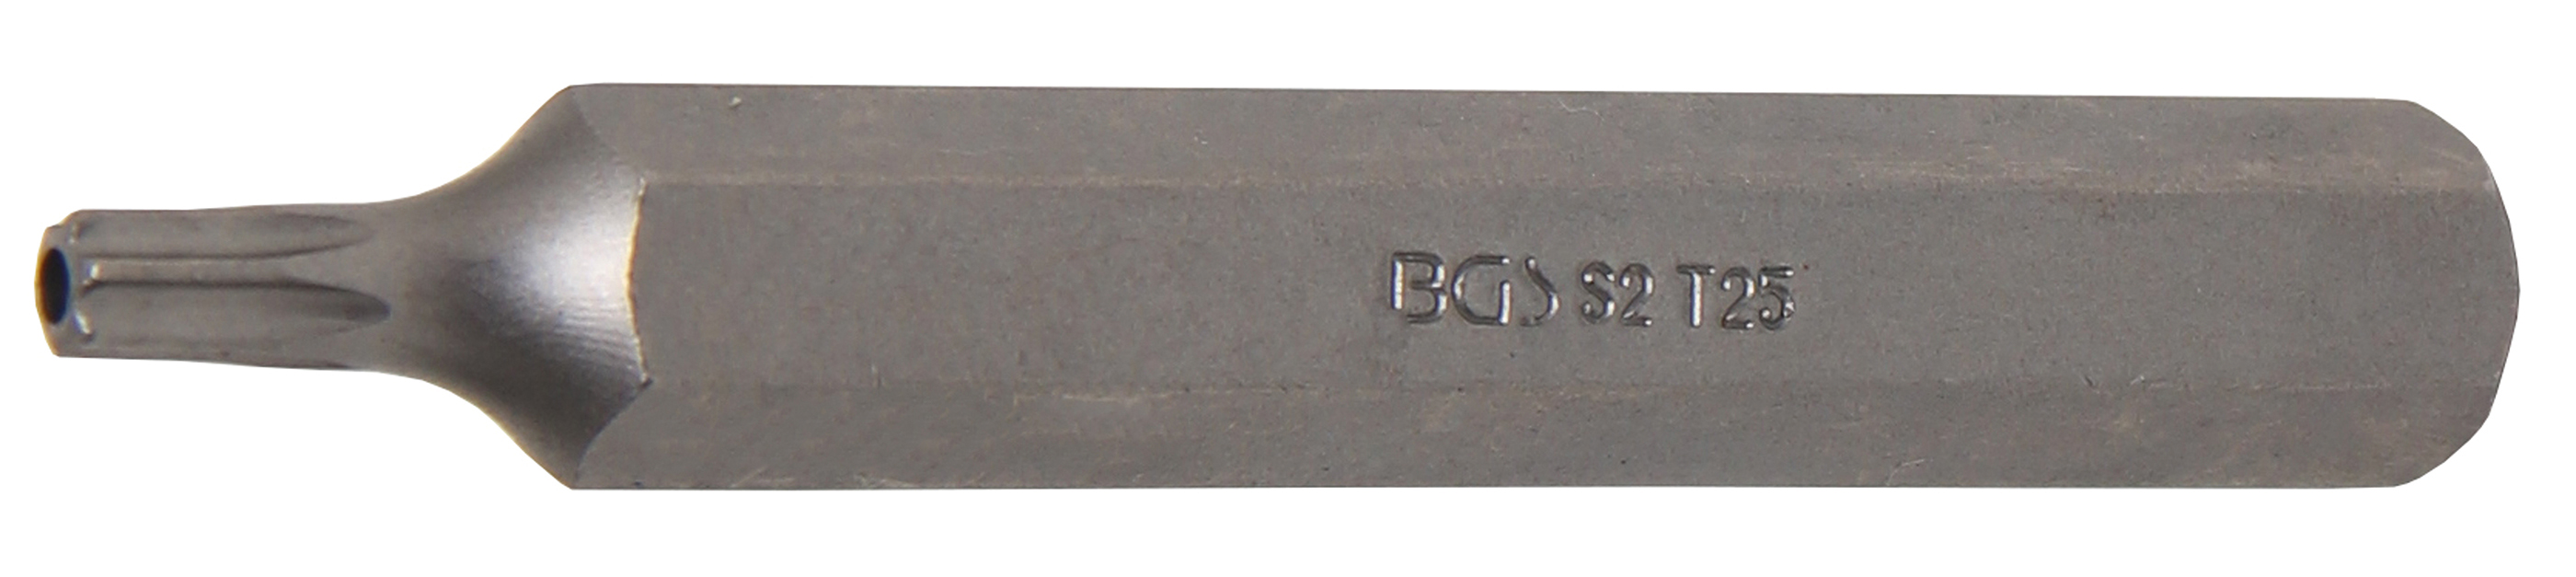 BGS 4725 Bit Torx T25 cu gaura de securizare, lungime 75mm, antrenare 10mm(3/8")